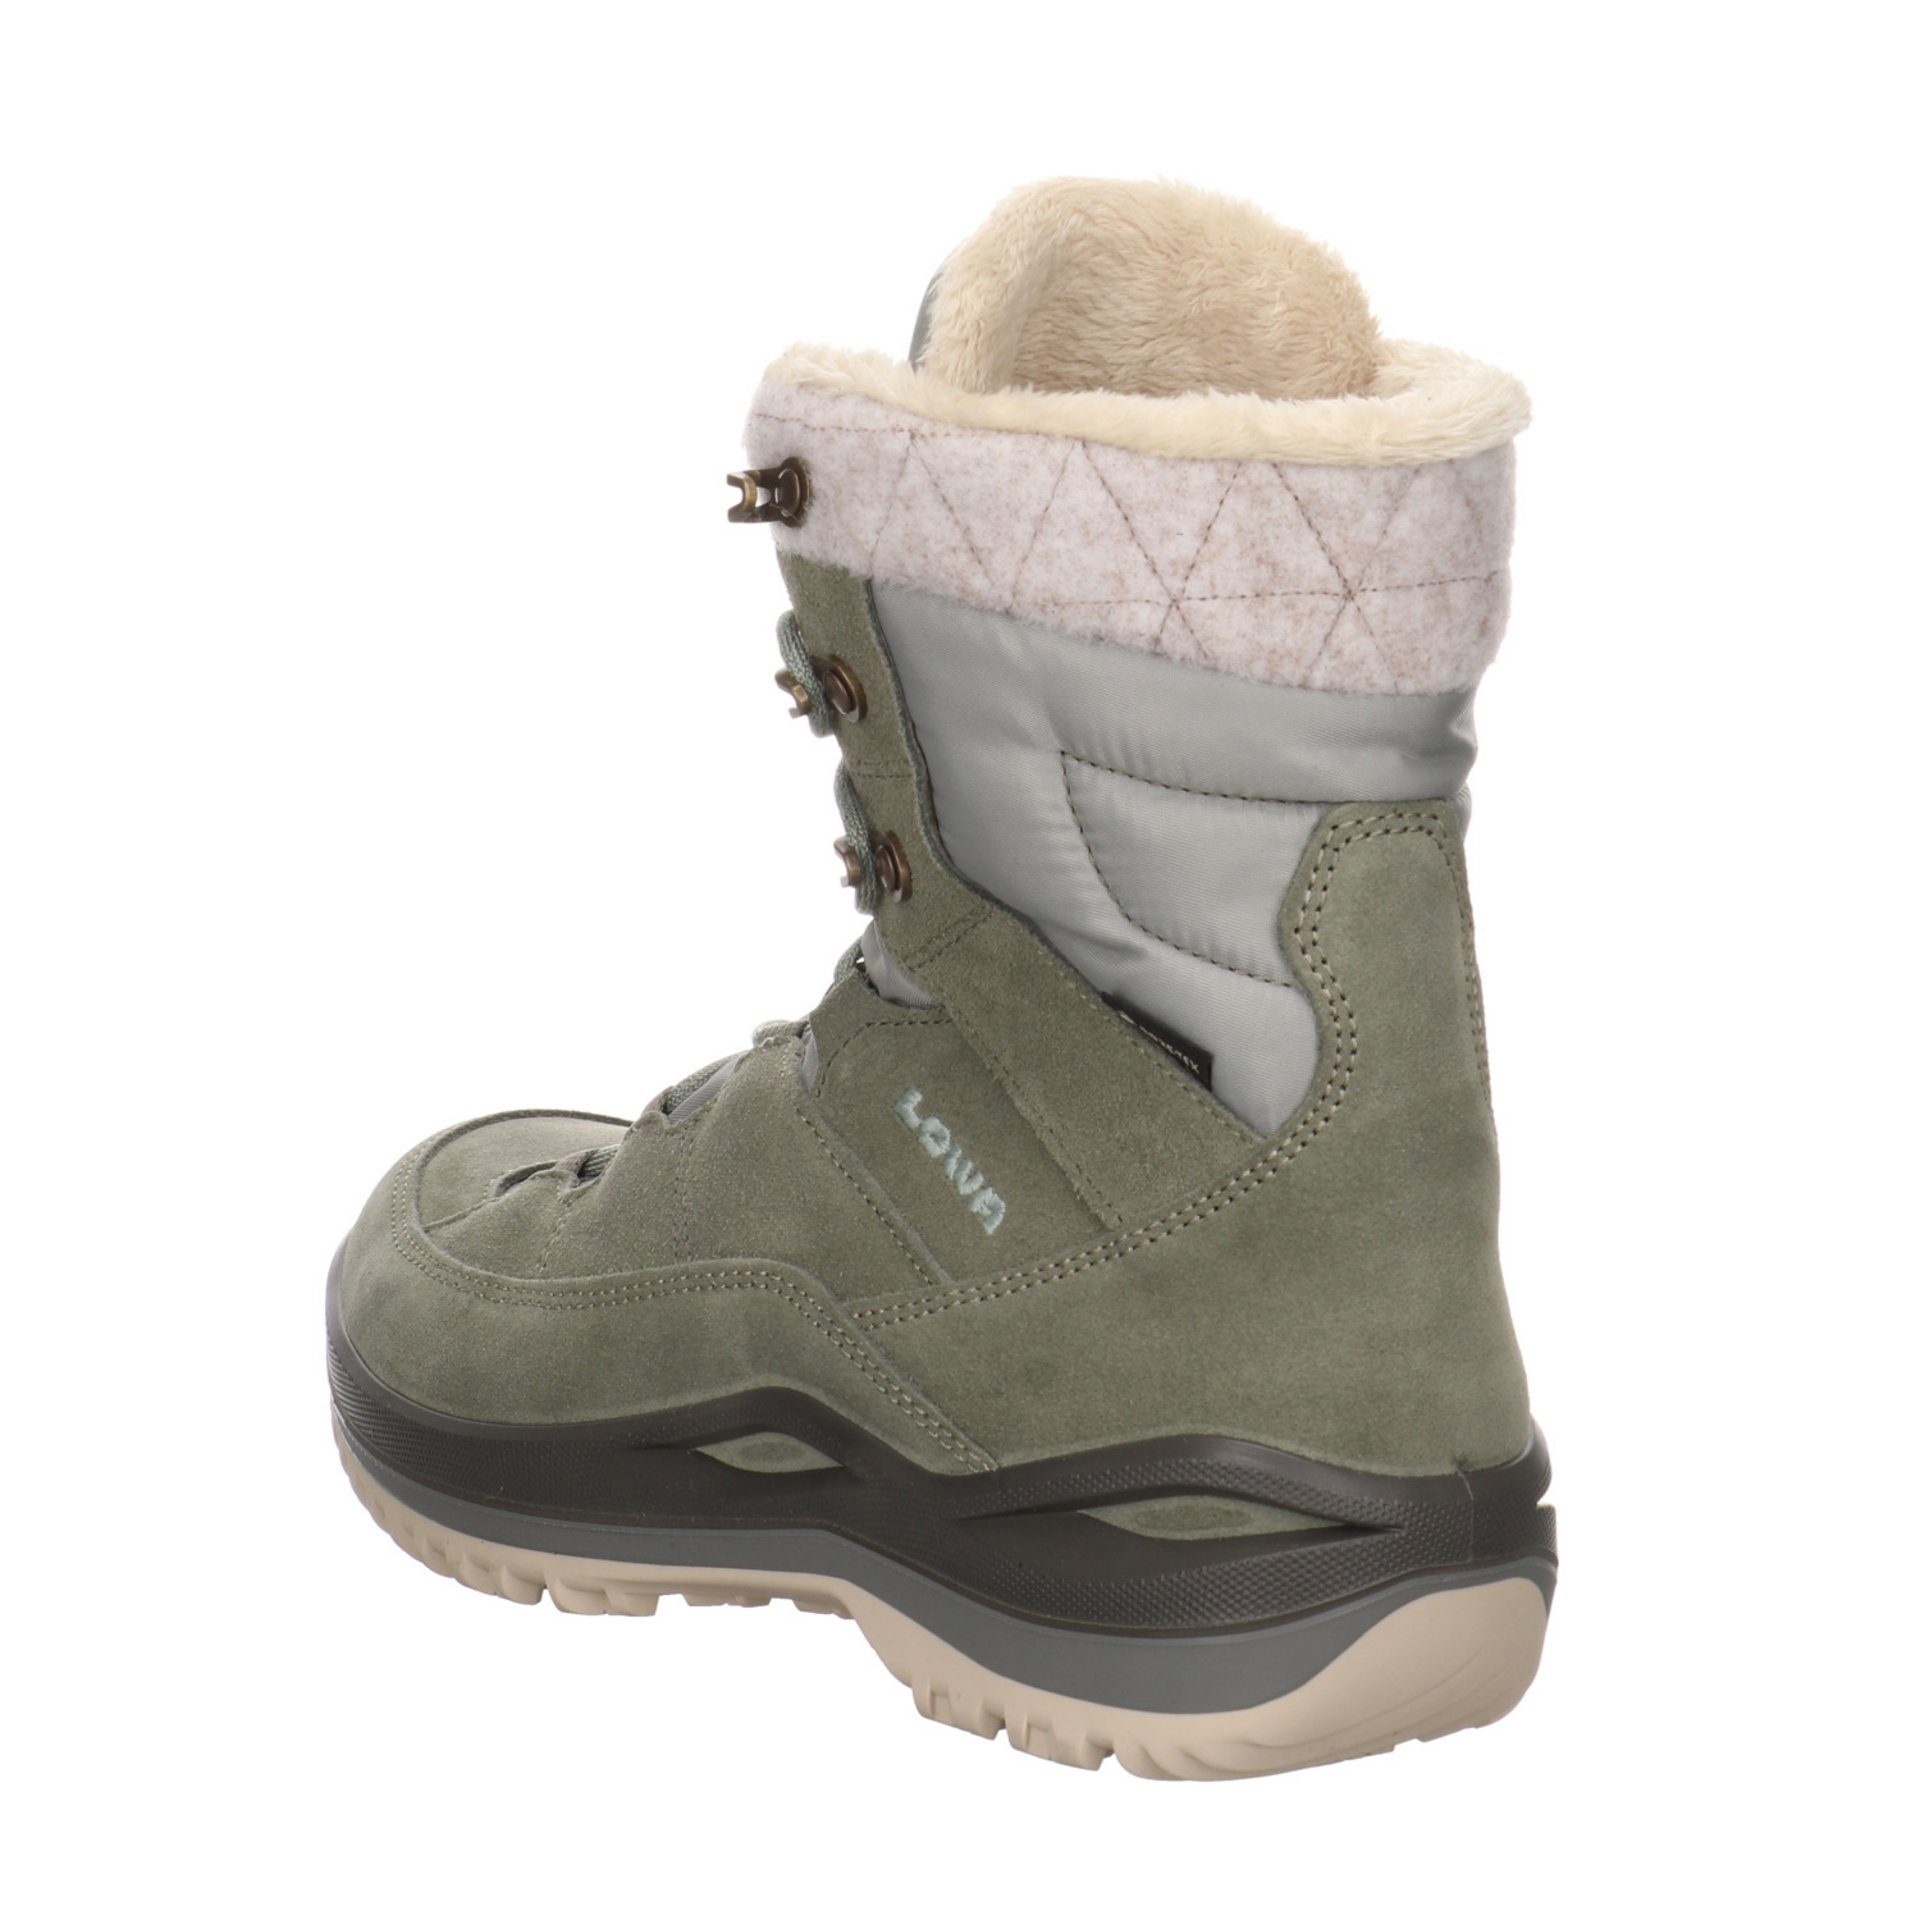 Lowa Damen Schuhe III seegras/jade Wanderschuh Outdoor Leder-/Textilkombination Outdoorschuh GTX Calceta